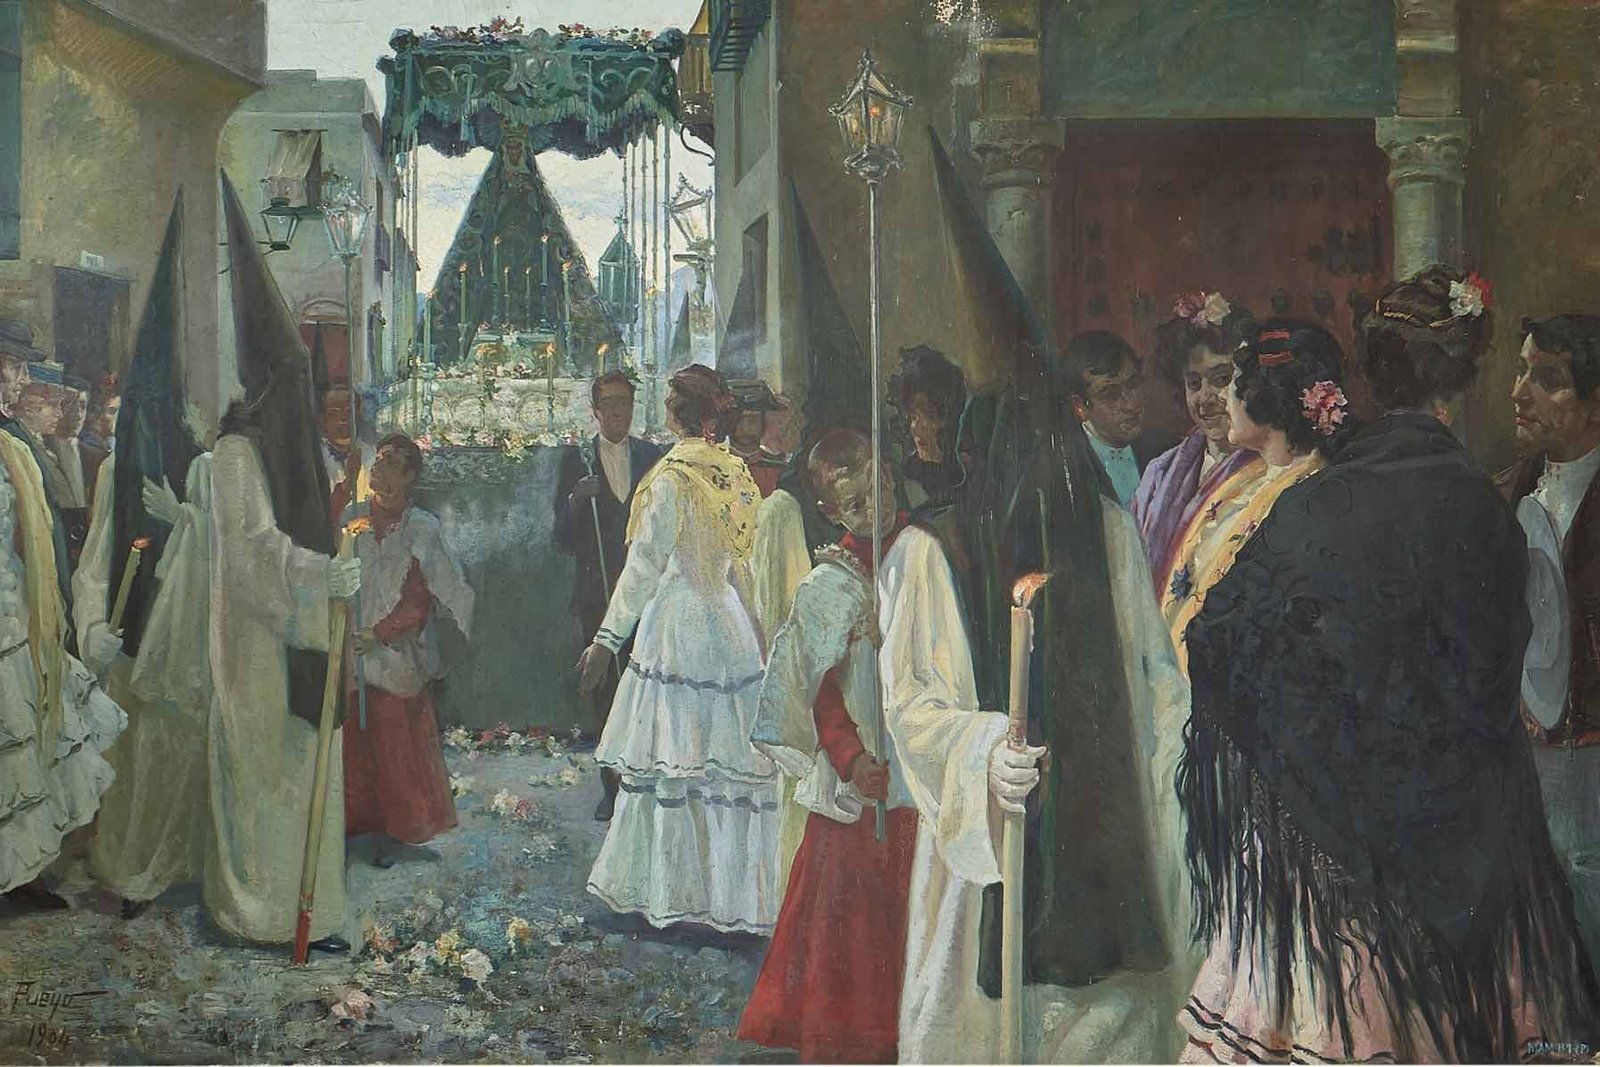 "La Semana Santa en Andalucía", José Pueyo Matanza, 1904.